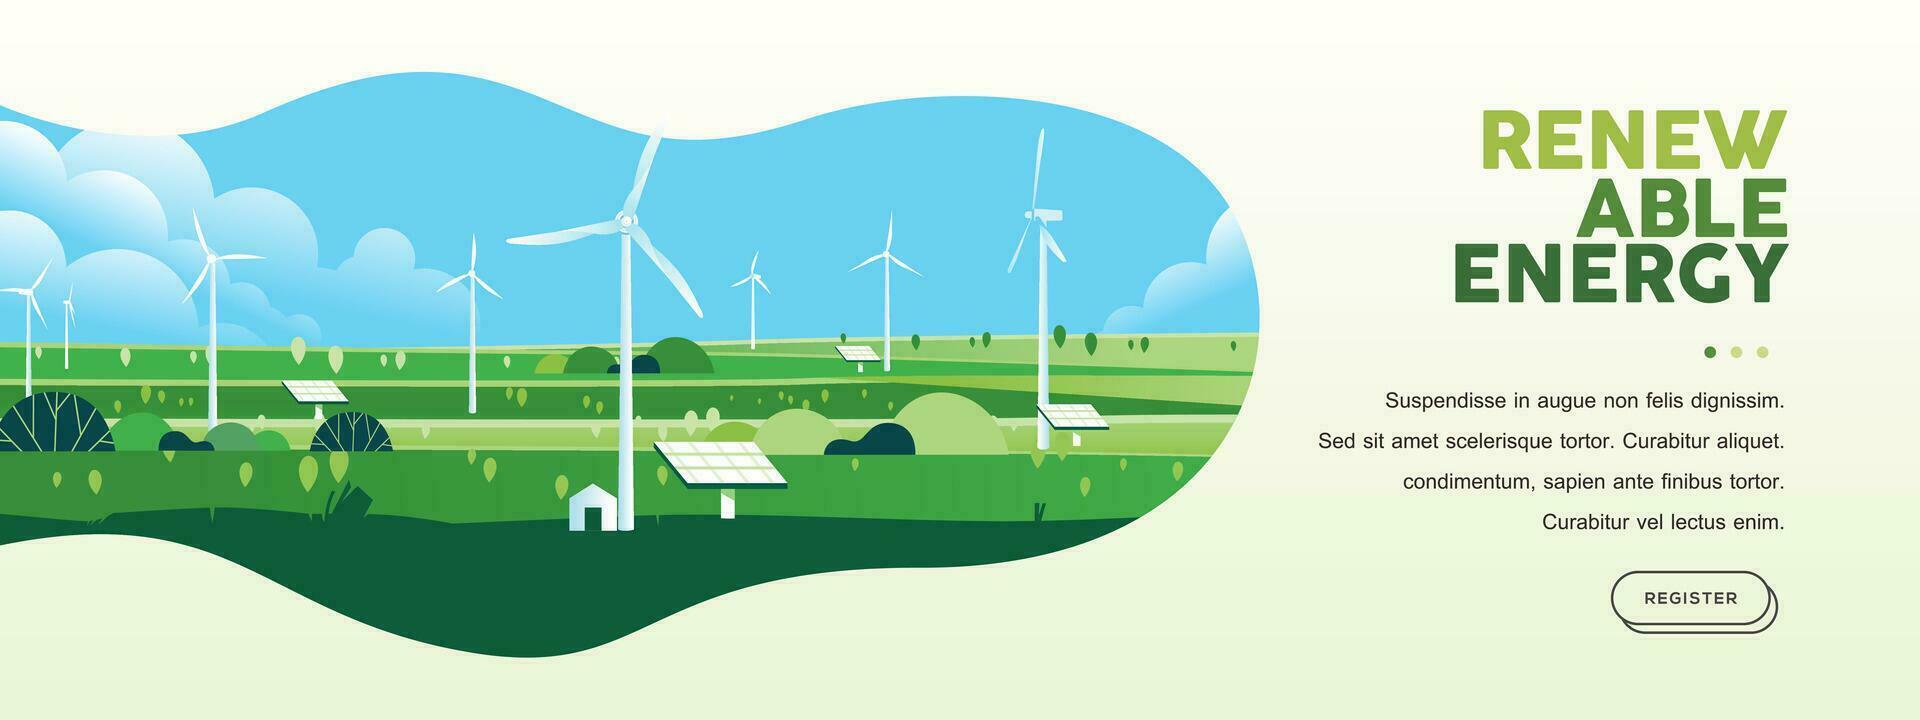 verde colinas naturaleza paisaje eco simpático tecnología, viento turbina, renovable alternativa energía, sostenible ambiente bandera vector